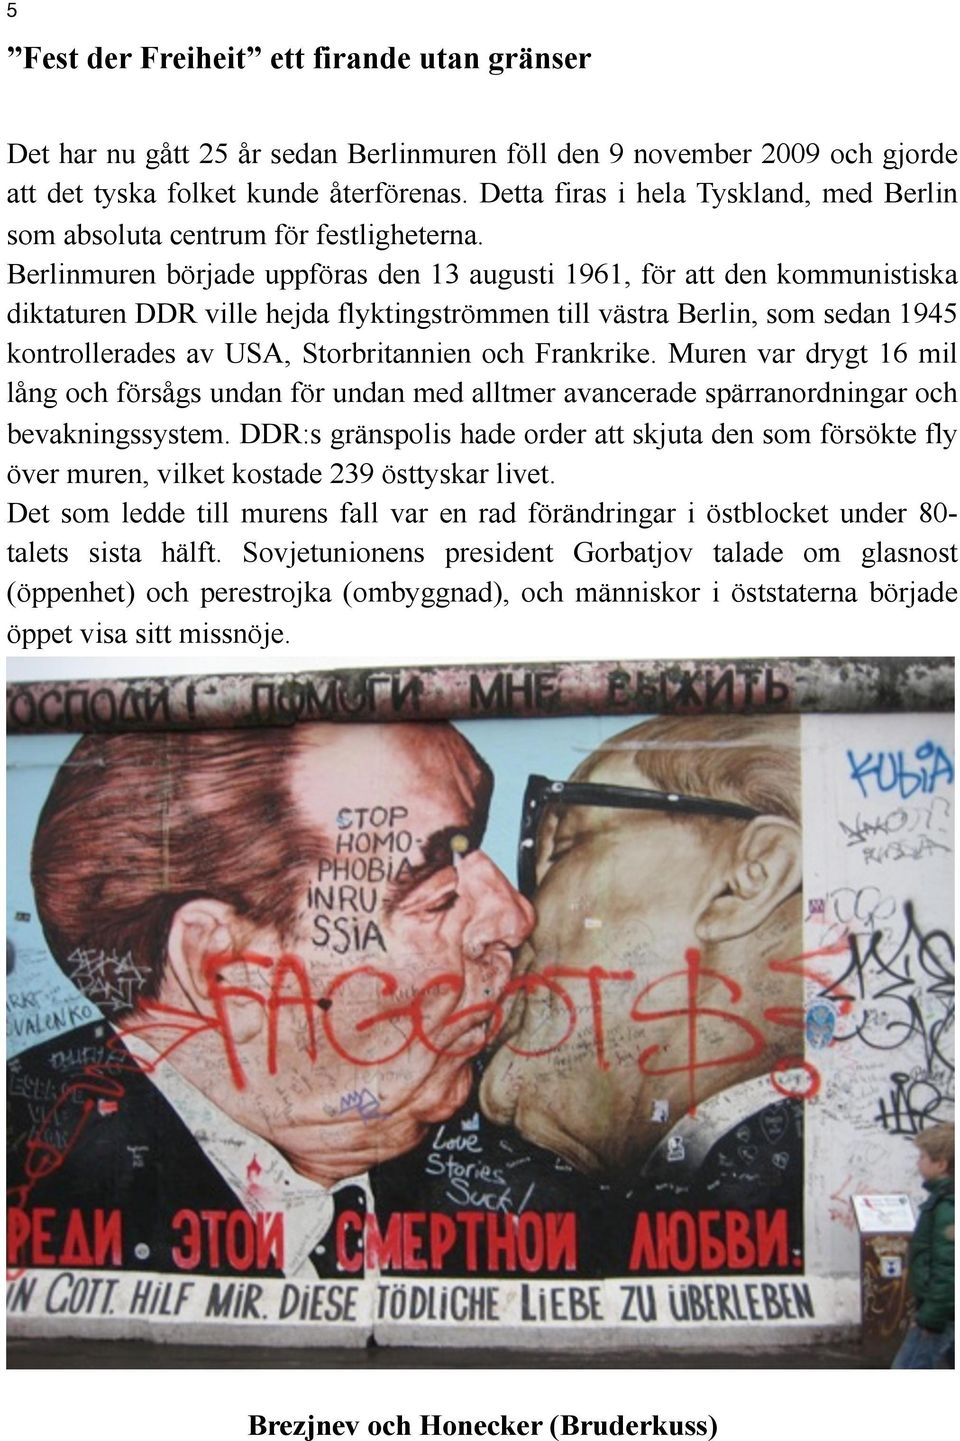 Berlinmuren började uppföras den 13 augusti 1961, för att den kommunistiska diktaturen DDR ville hejda flyktingströmmen till västra Berlin, som sedan 1945 kontrollerades av USA, Storbritannien och